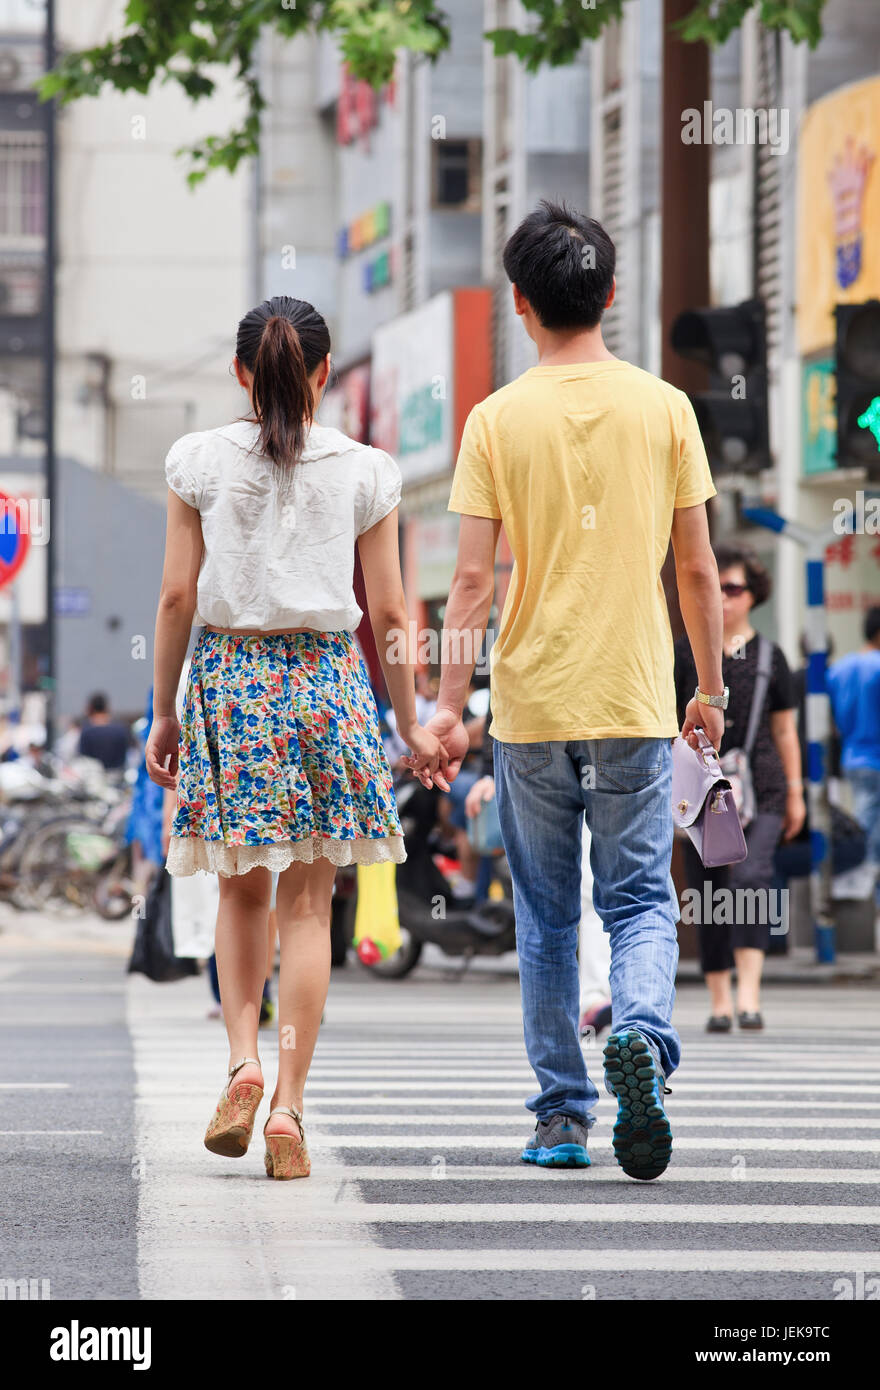 NANJING-MAI 25-2014. Jugendliches Paar geht Hand in Hand auf die Straße. Liebe, Romantik und Dating sind entmutigt, wenn Menschen jung sind. Stockfoto